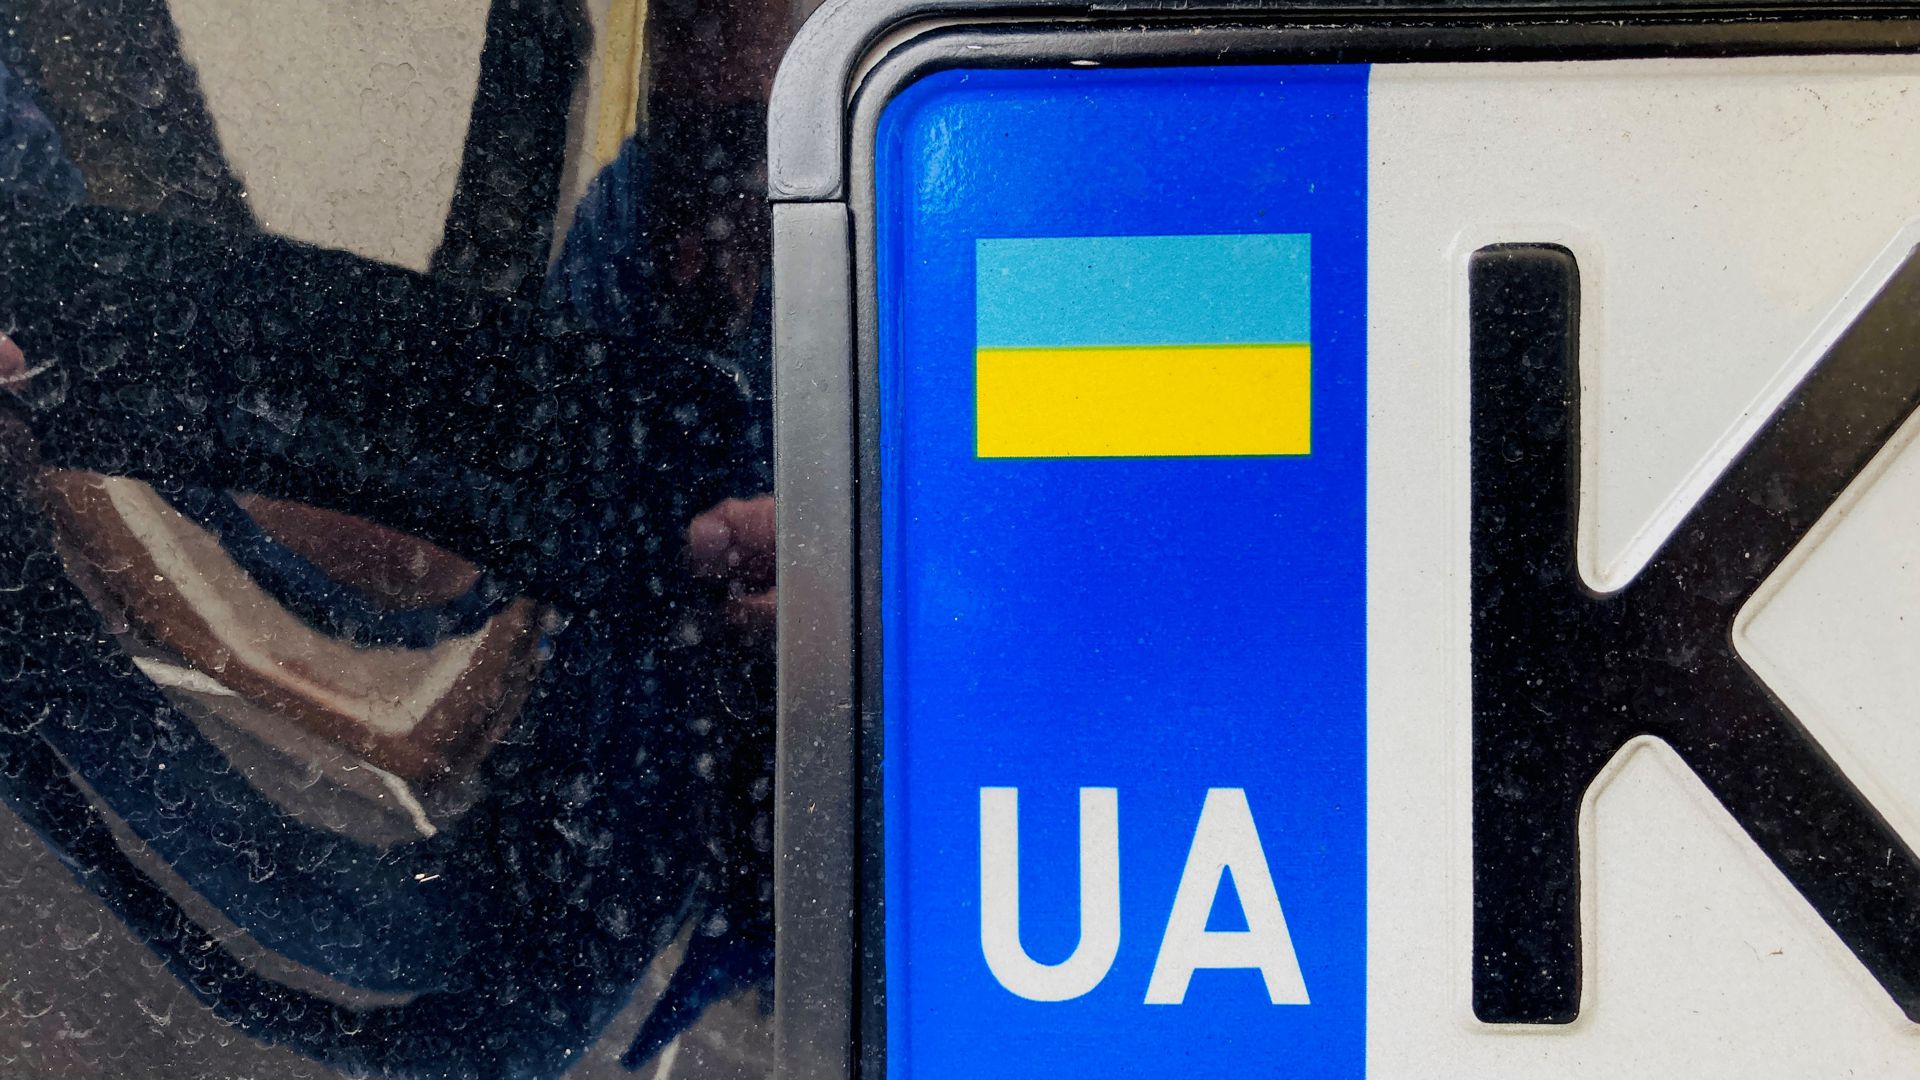 Nummernschild eines Fahrzeugs aus der Ukraine